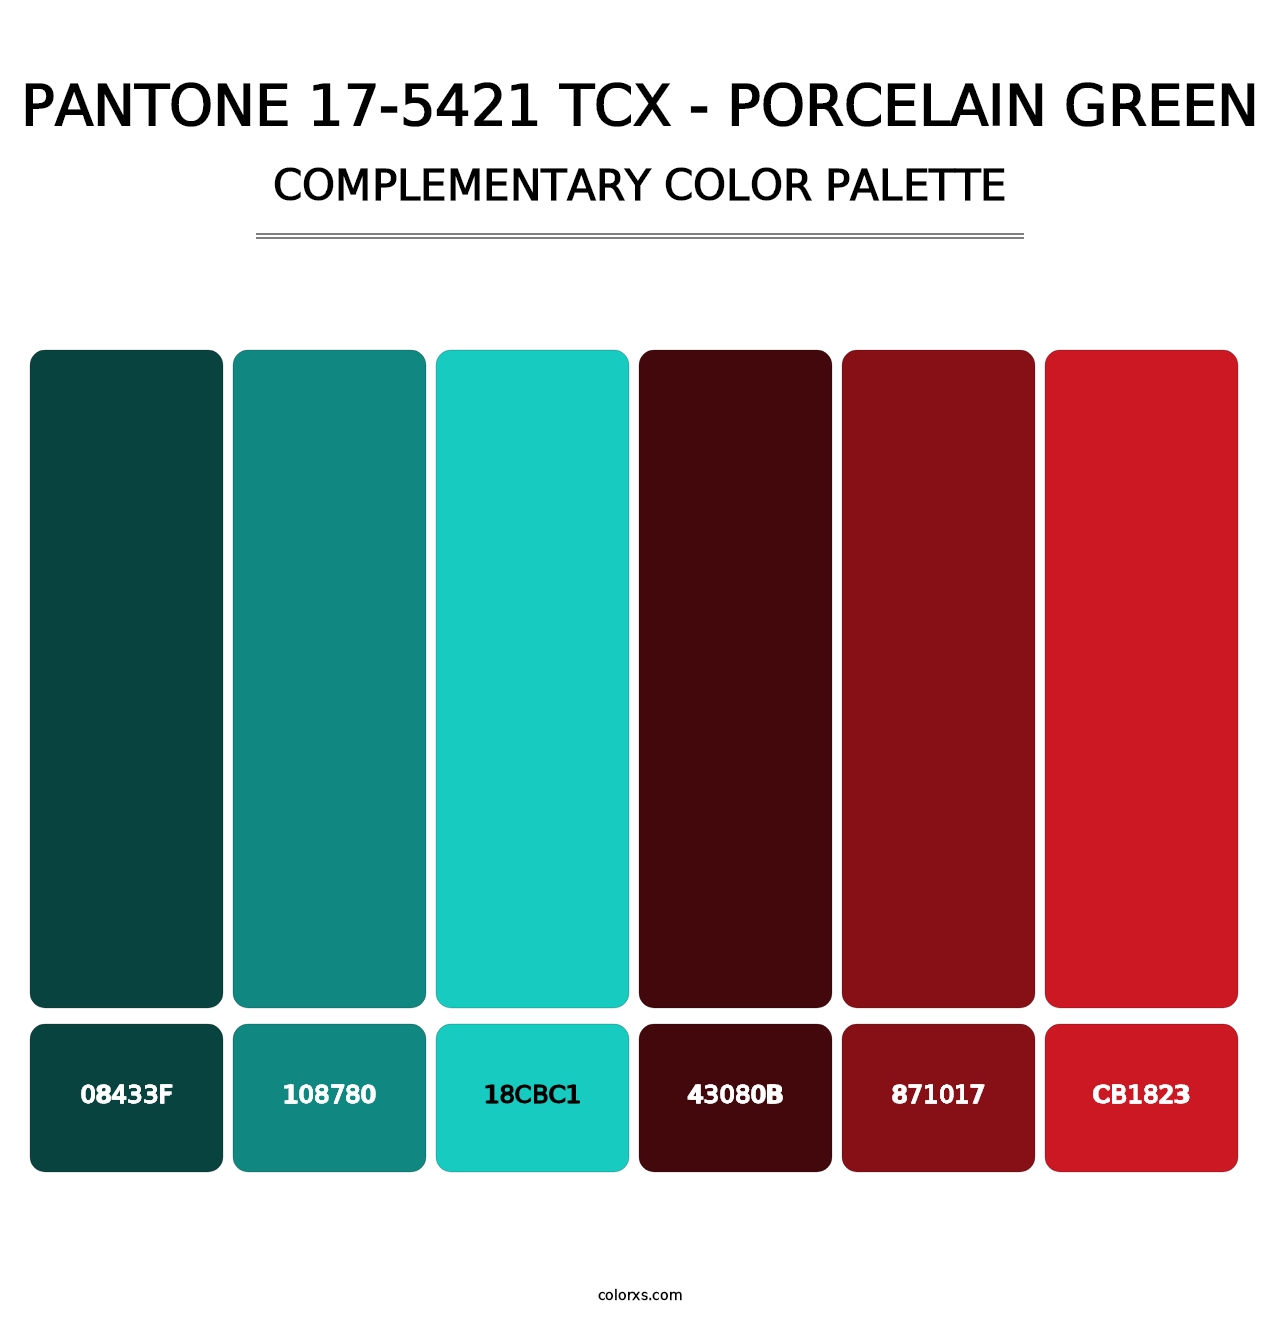 PANTONE 17-5421 TCX - Porcelain Green - Complementary Color Palette